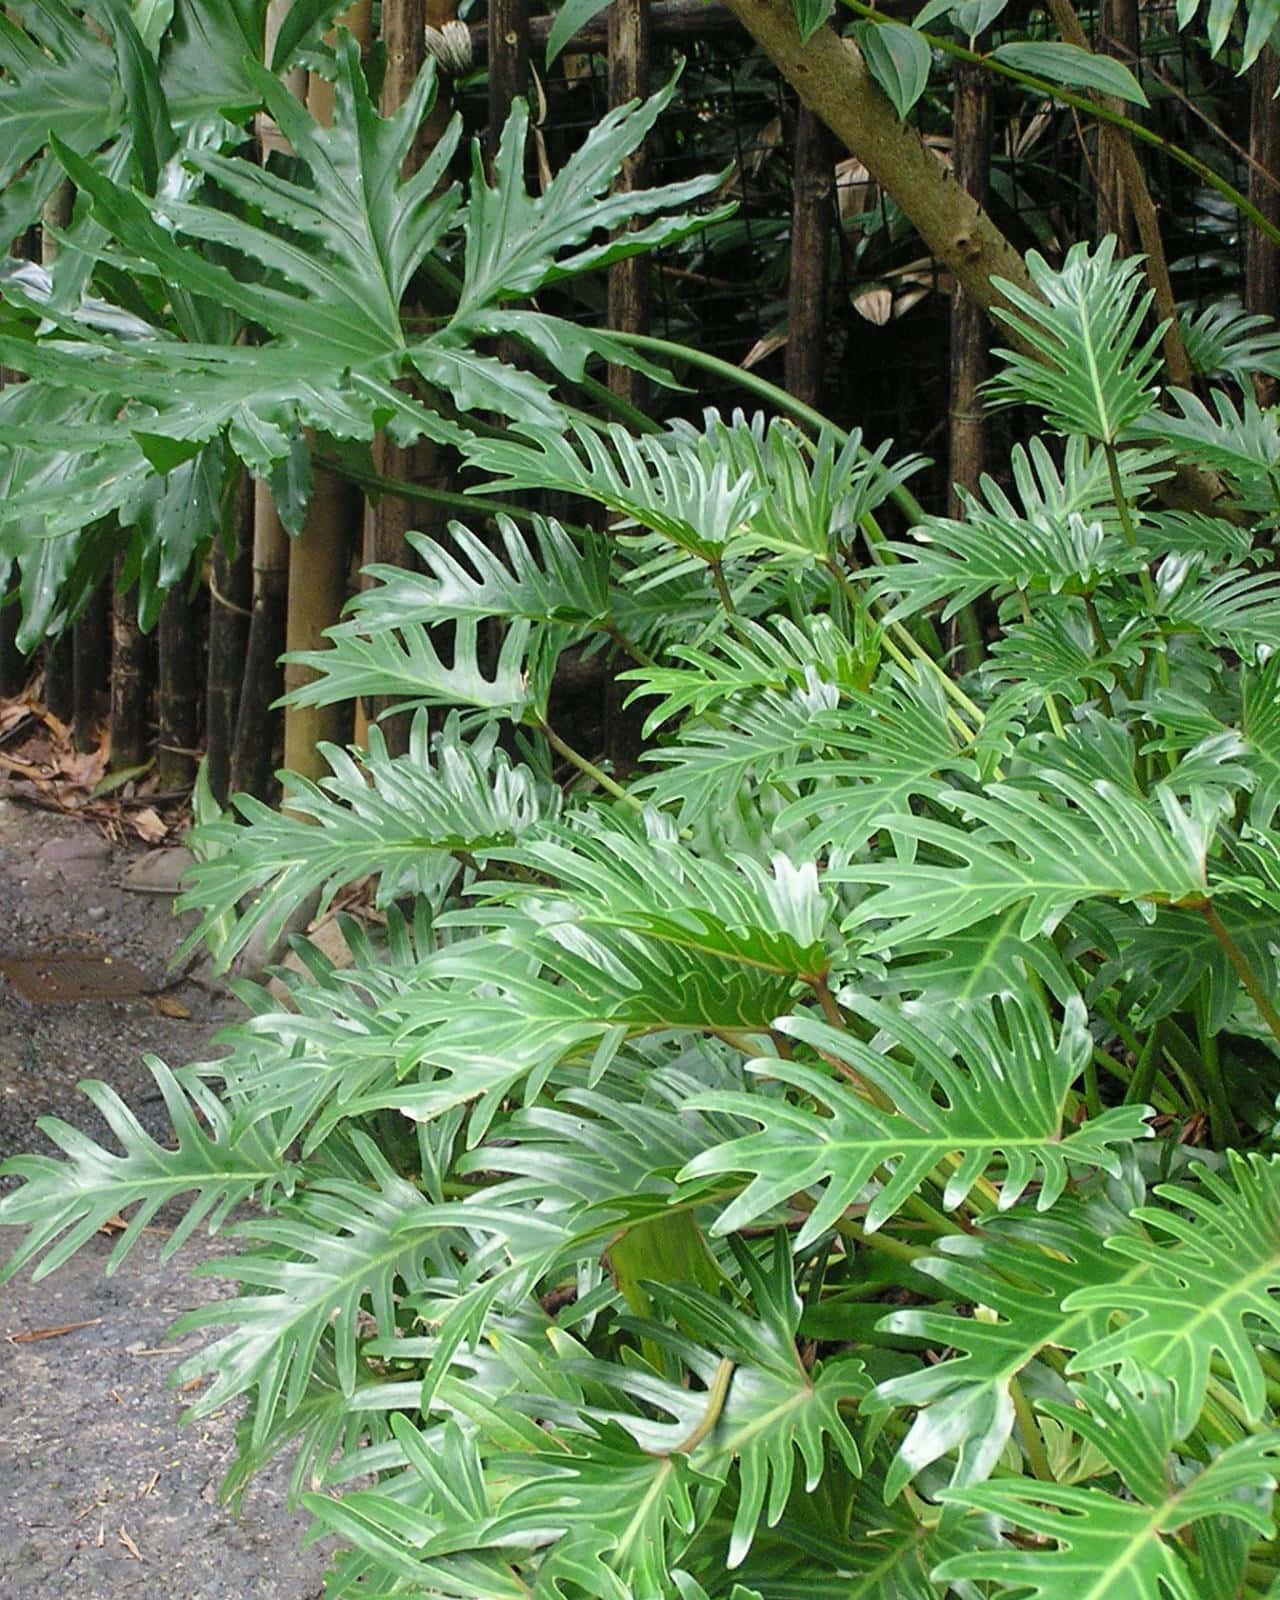 Sorprendentipiante Tropicali Verdi In Un Giardino Rigoglioso